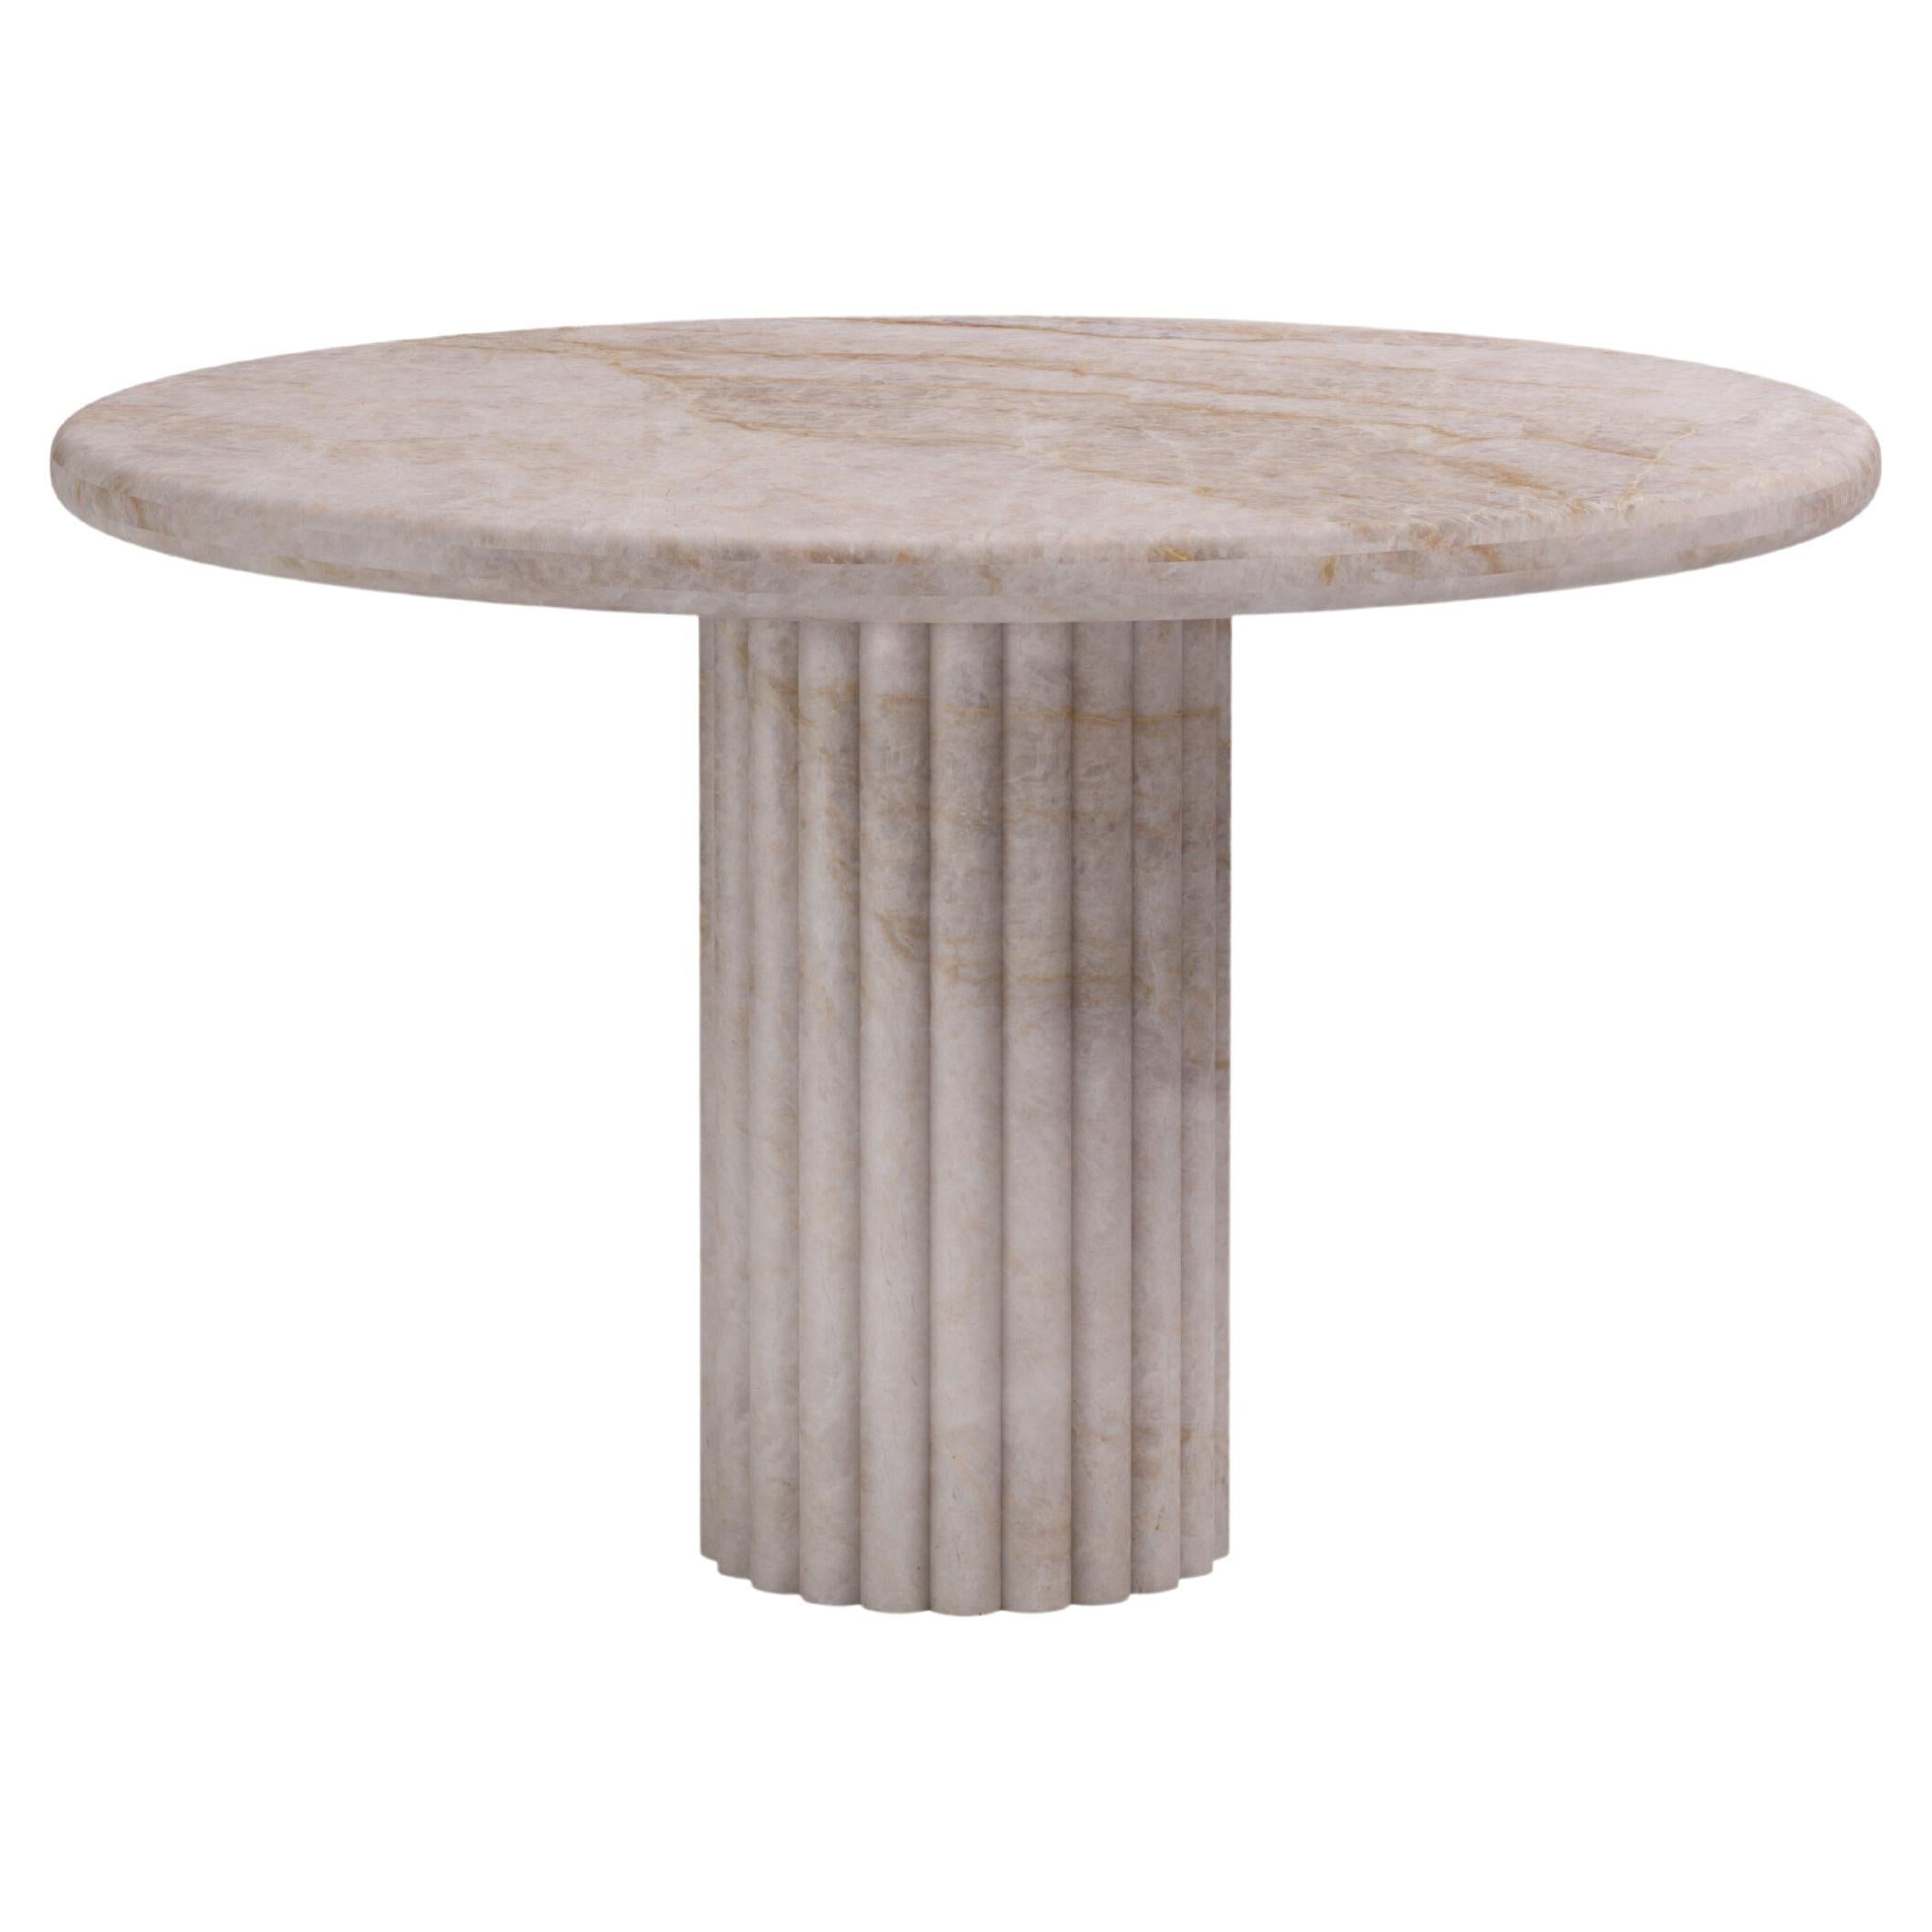 FORM(LA) Fluta Round Dining Table 36”L x 36”W x 30”H Taj Mahal Quartzite For Sale